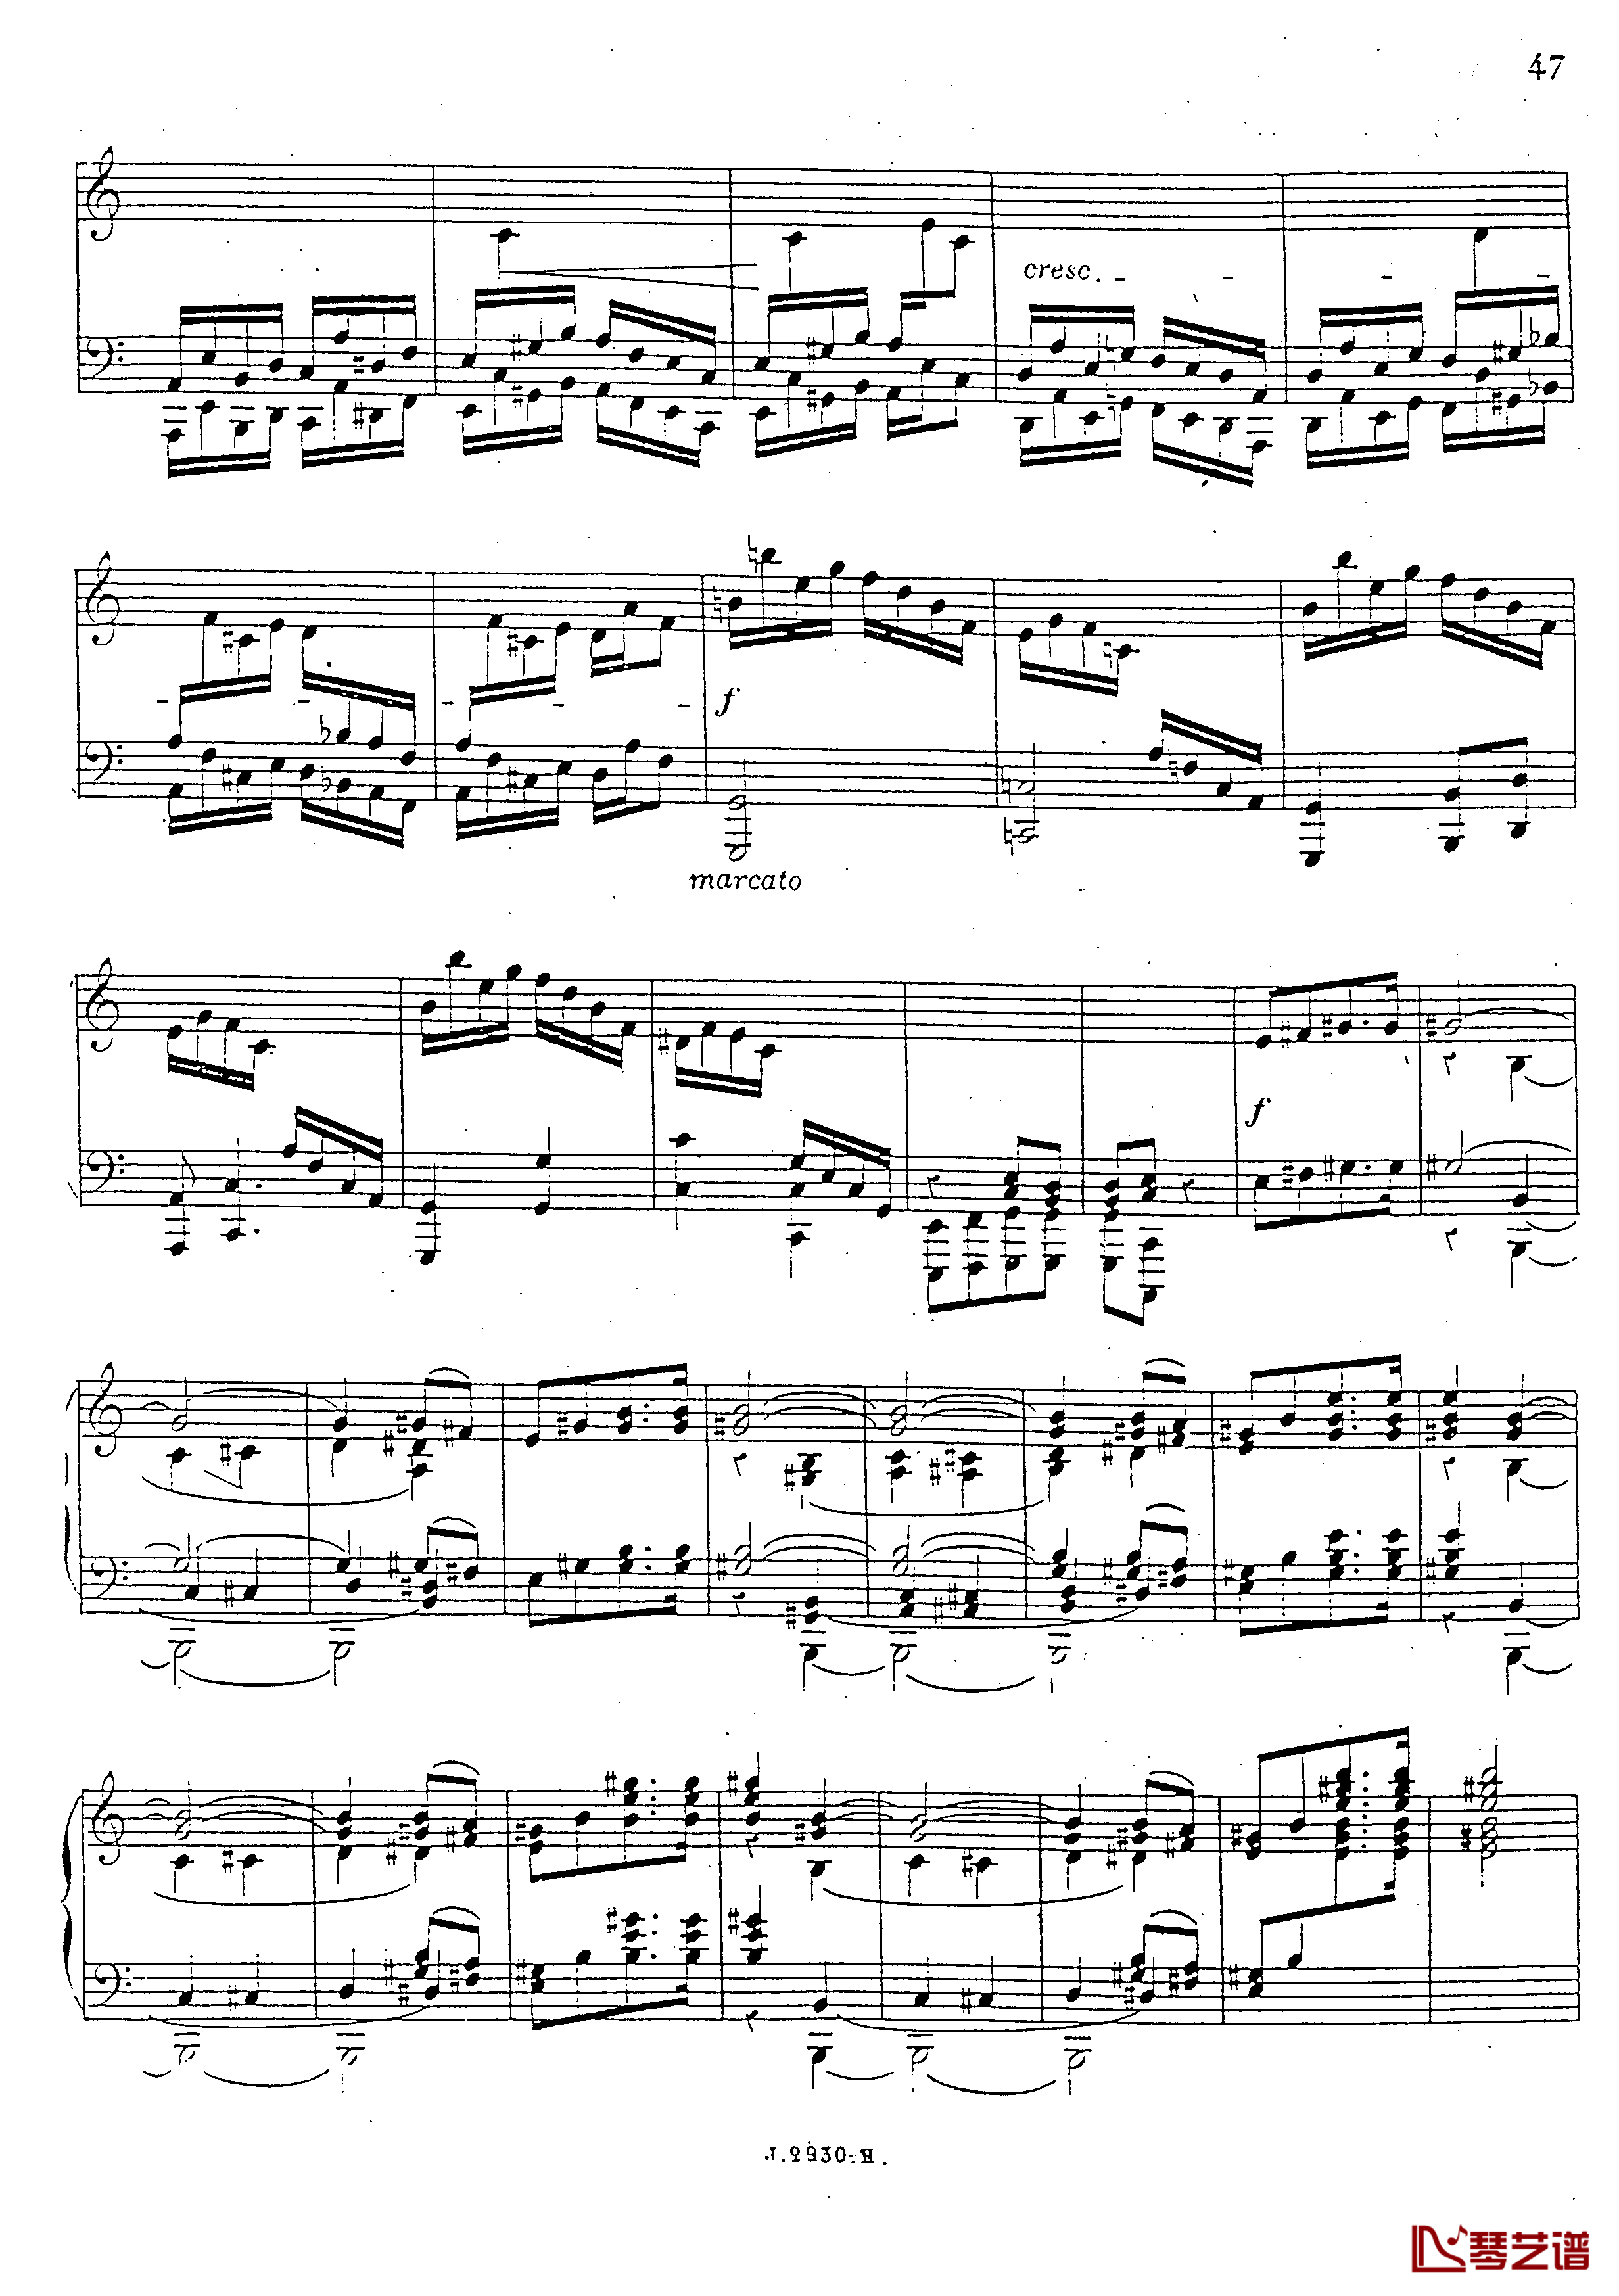 a小调第四钢琴奏鸣曲钢琴谱-安东 鲁宾斯坦- Op.10048